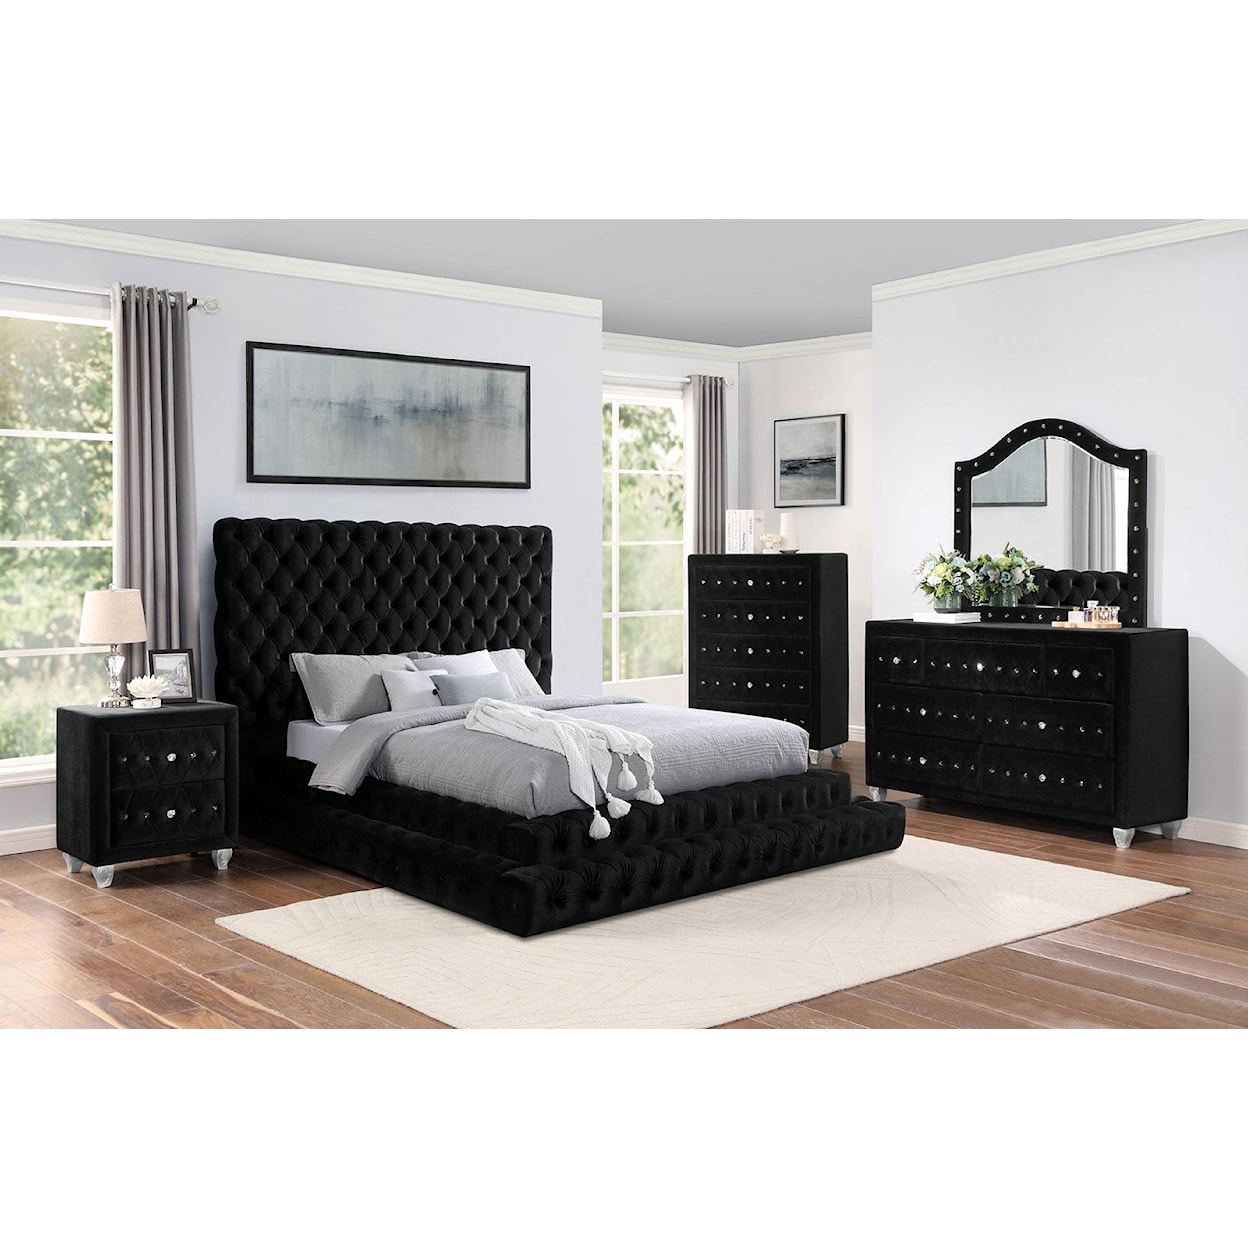 Furniture of America Stefania 4-Piece Queen Bedroom Set